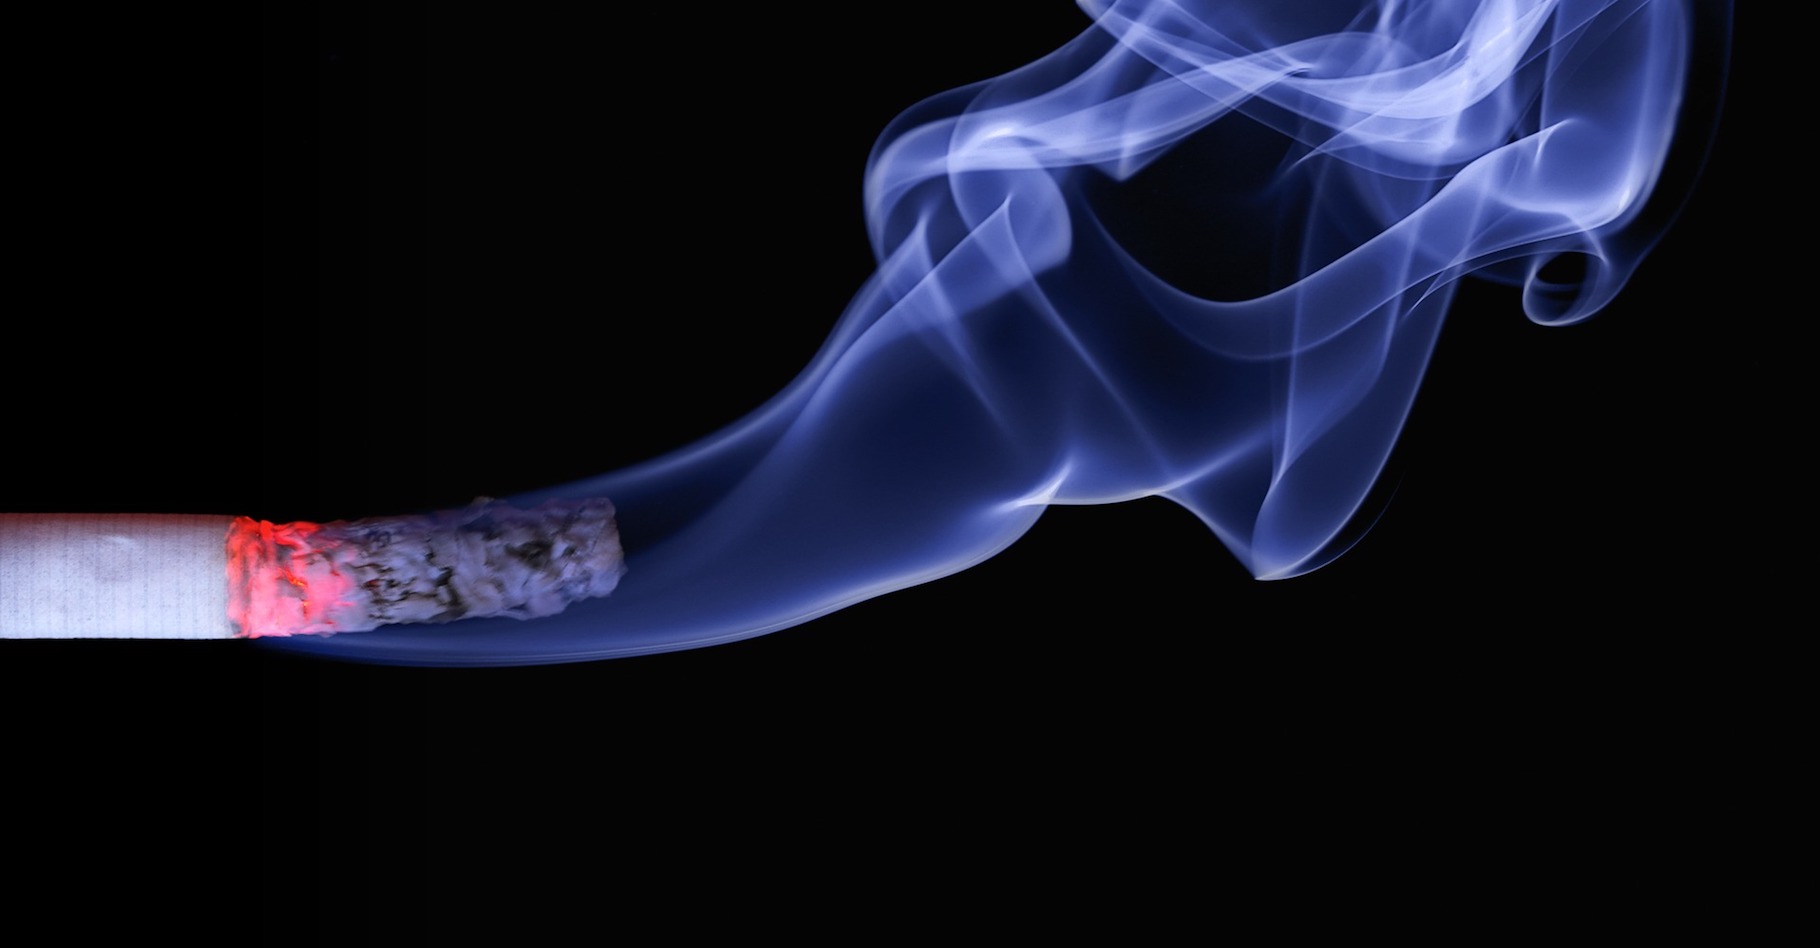 Le Centre international de recherche sur le cancer classe la fumée de cigarette parmi les substances cancérogènes avérées. Certains la qualifieraient plutôt de cancérigène… © realworkhard, Pixabay, CC0&nbsp;Creative Commons